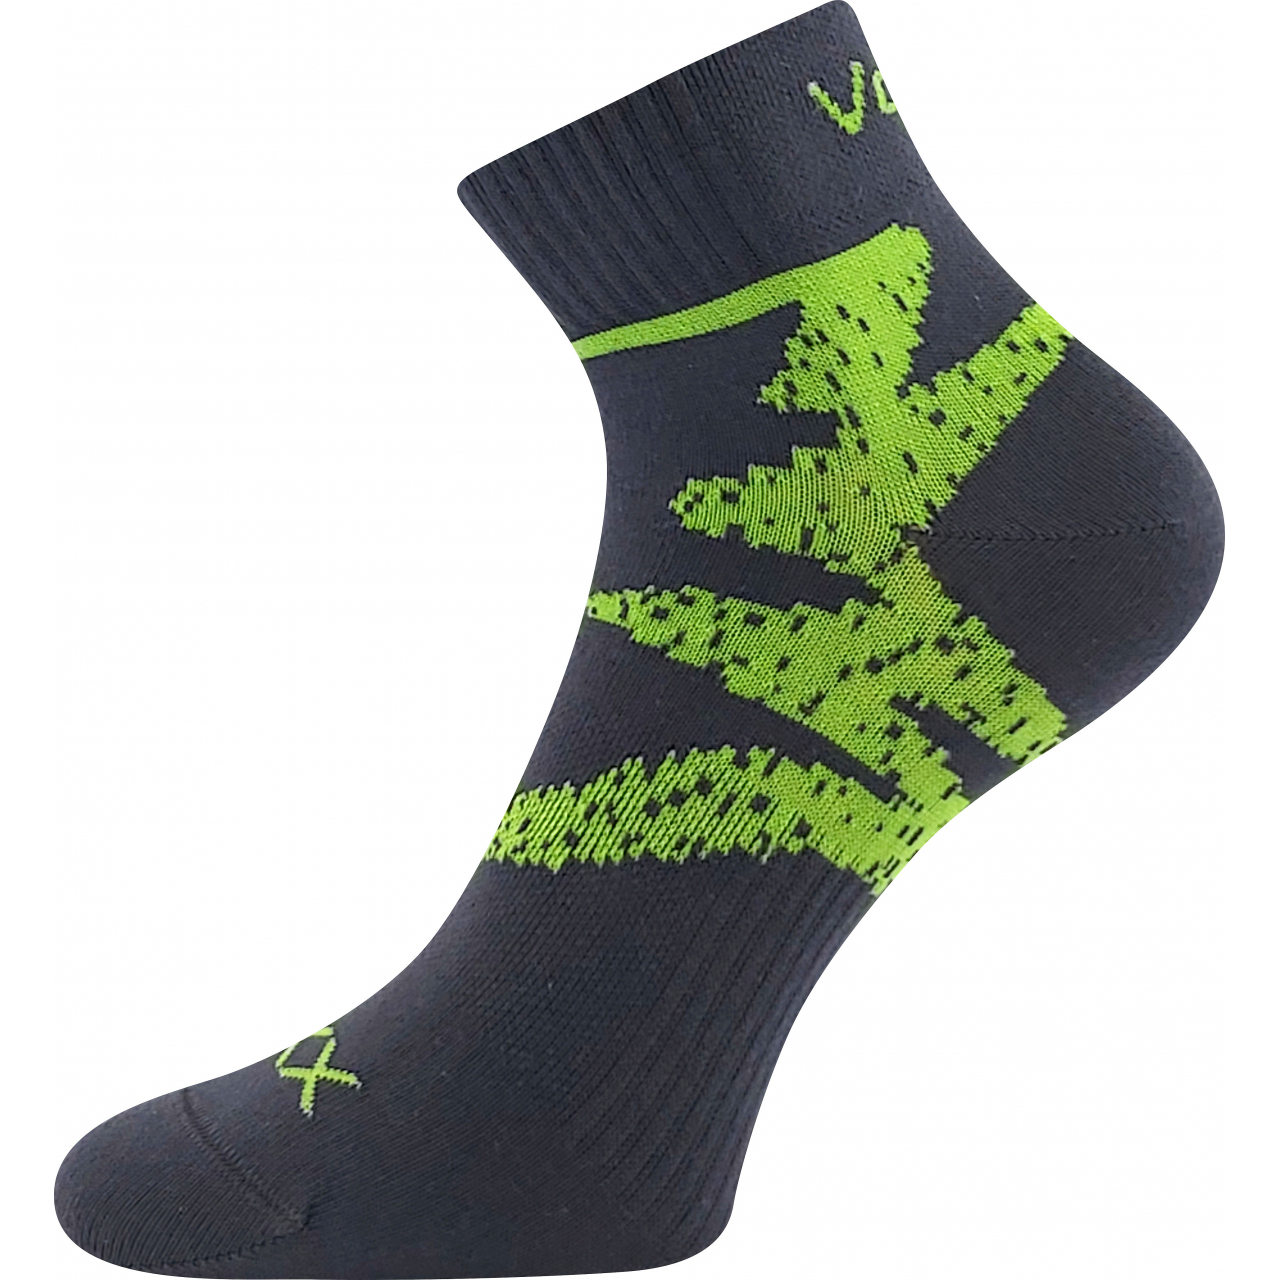 Ponožky sportovní unisex Voxx Franz 05 - tmavě šedé-zelené, 43-46